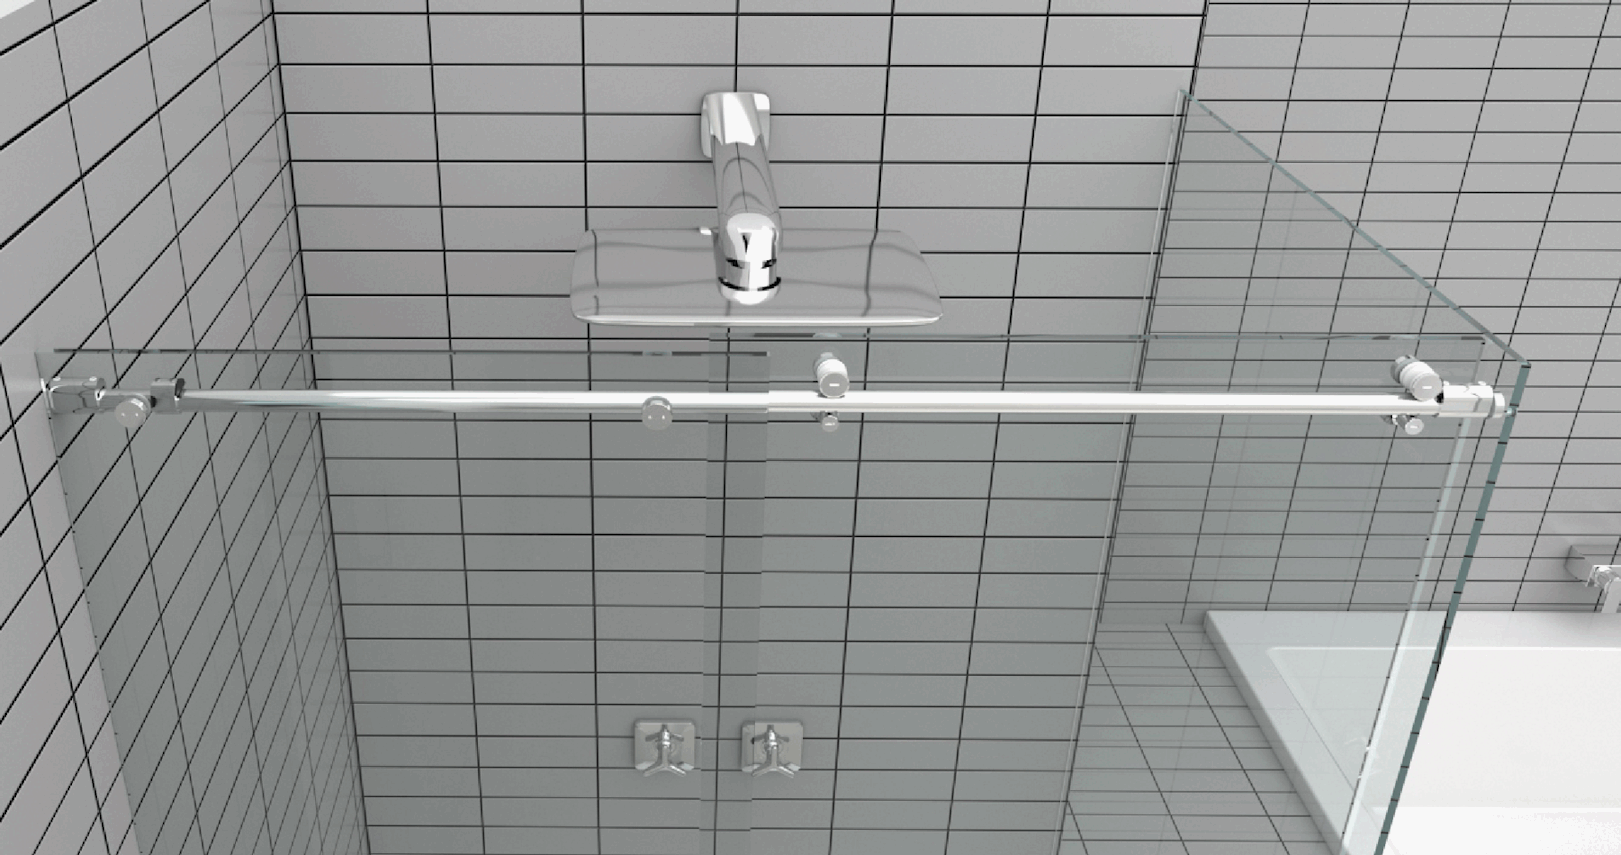 IPH01 Maniglia per box doccia in alluminio anodizzato By GH ITALY